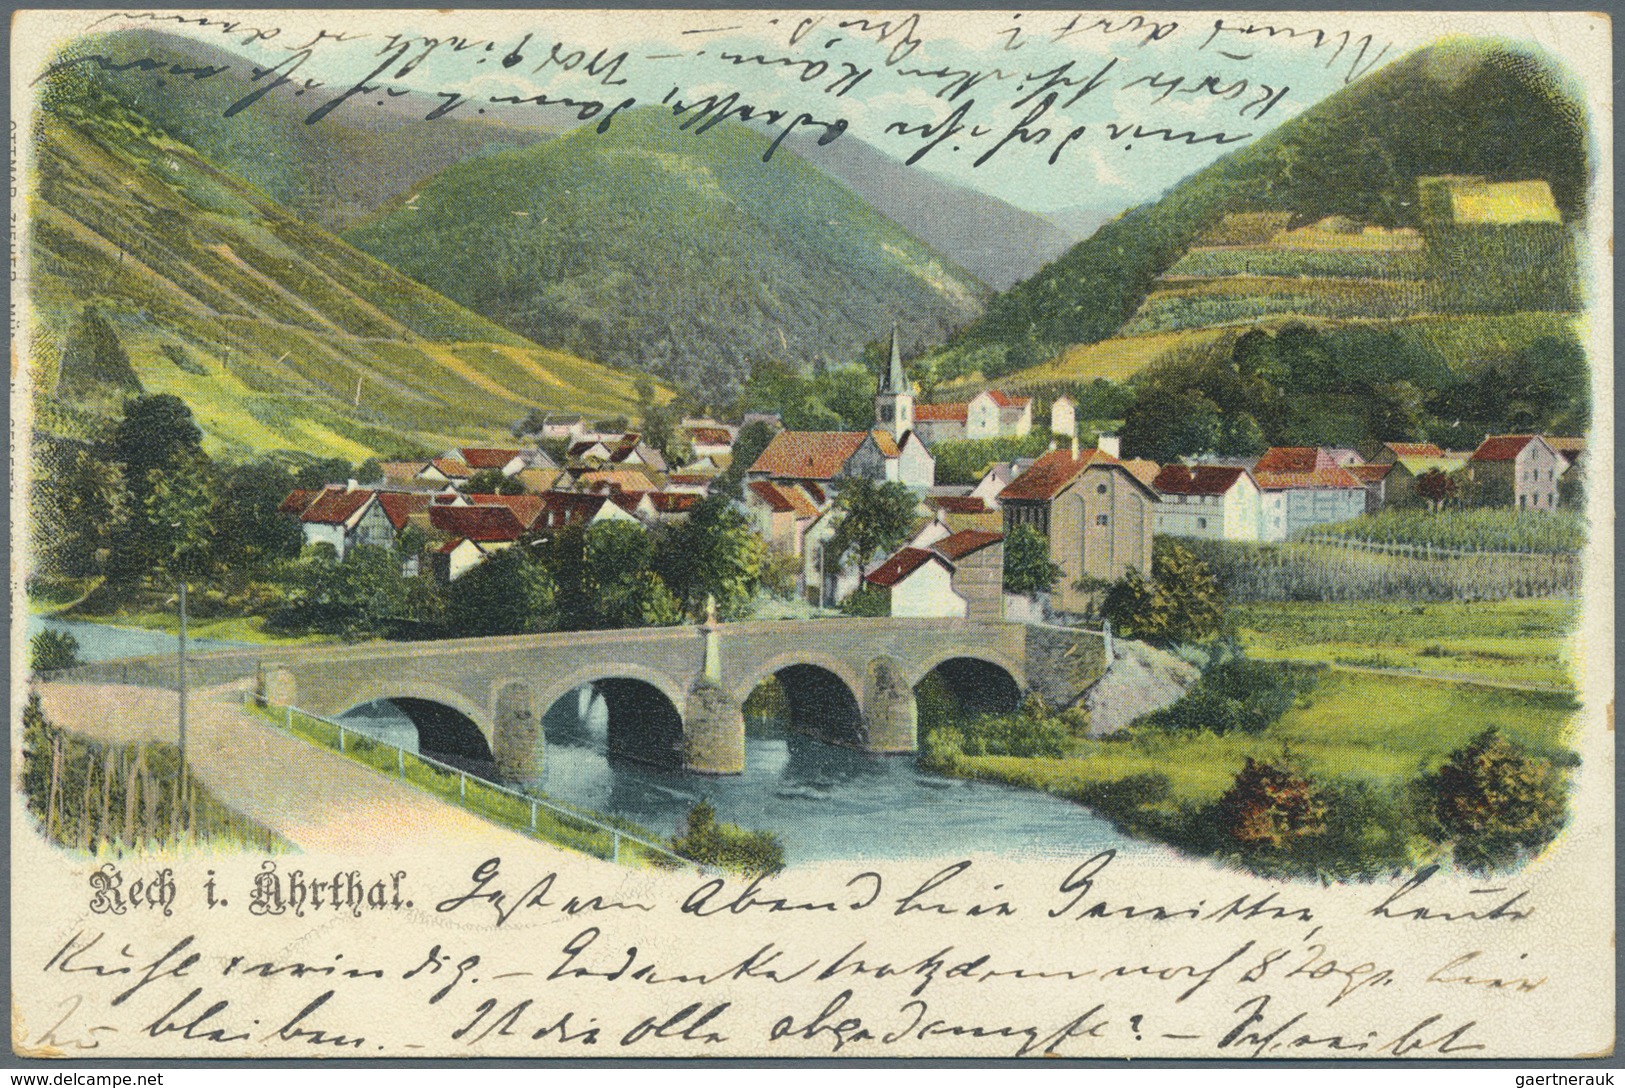 Ansichtskarten: Rheinland-Pfalz: AHRTAL und EIFEL, mit u.a. Mayschoss, Rech, Bad Neuenahr, Ahrweiler